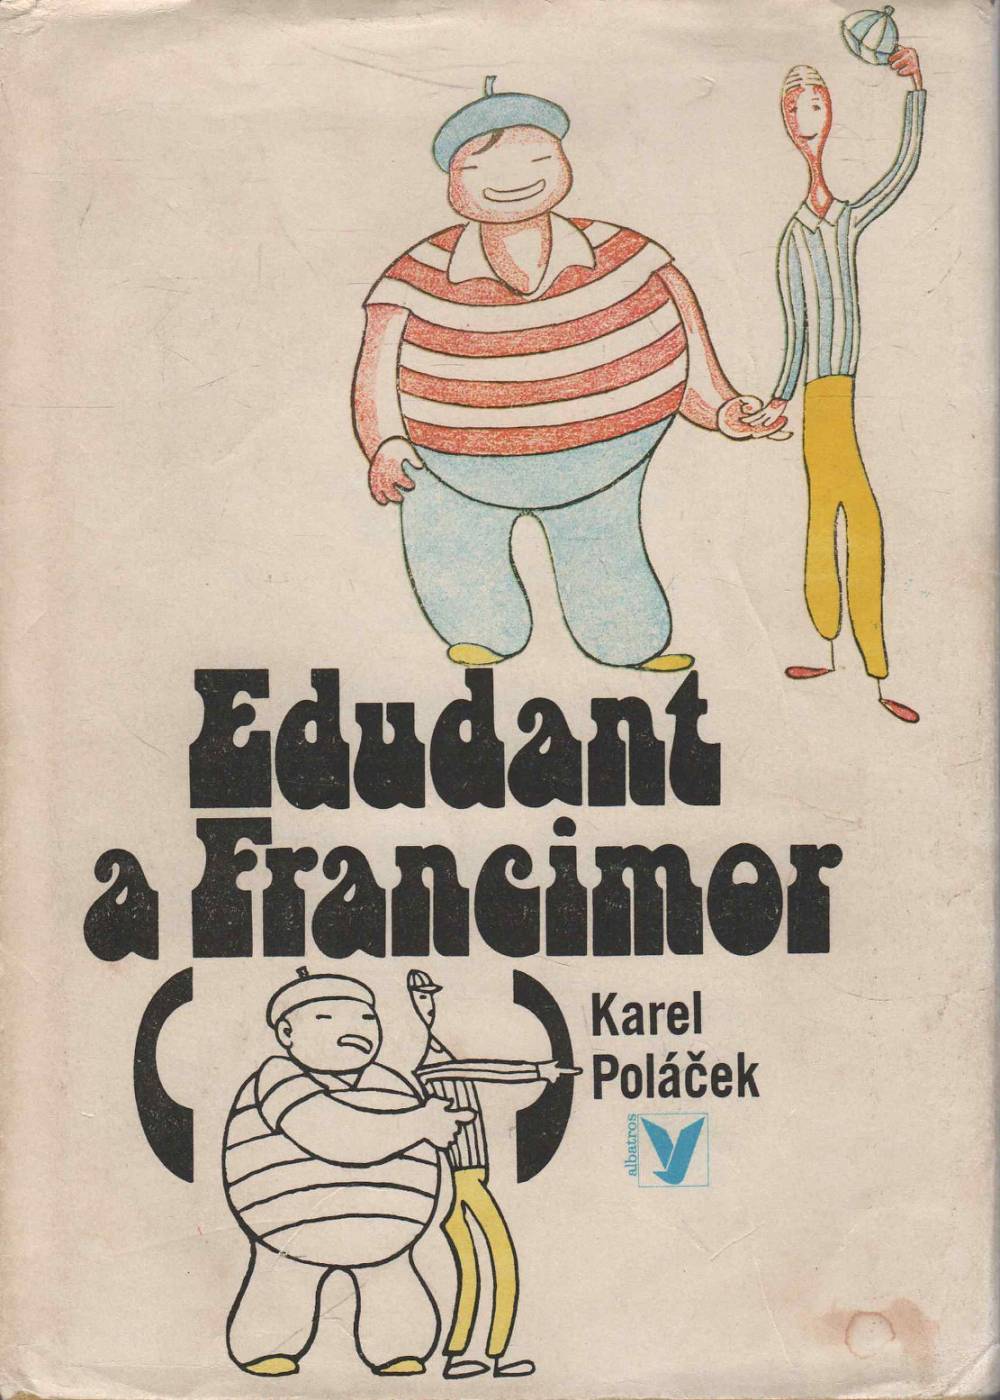 Poláček, Karel – Edudant a Francimor